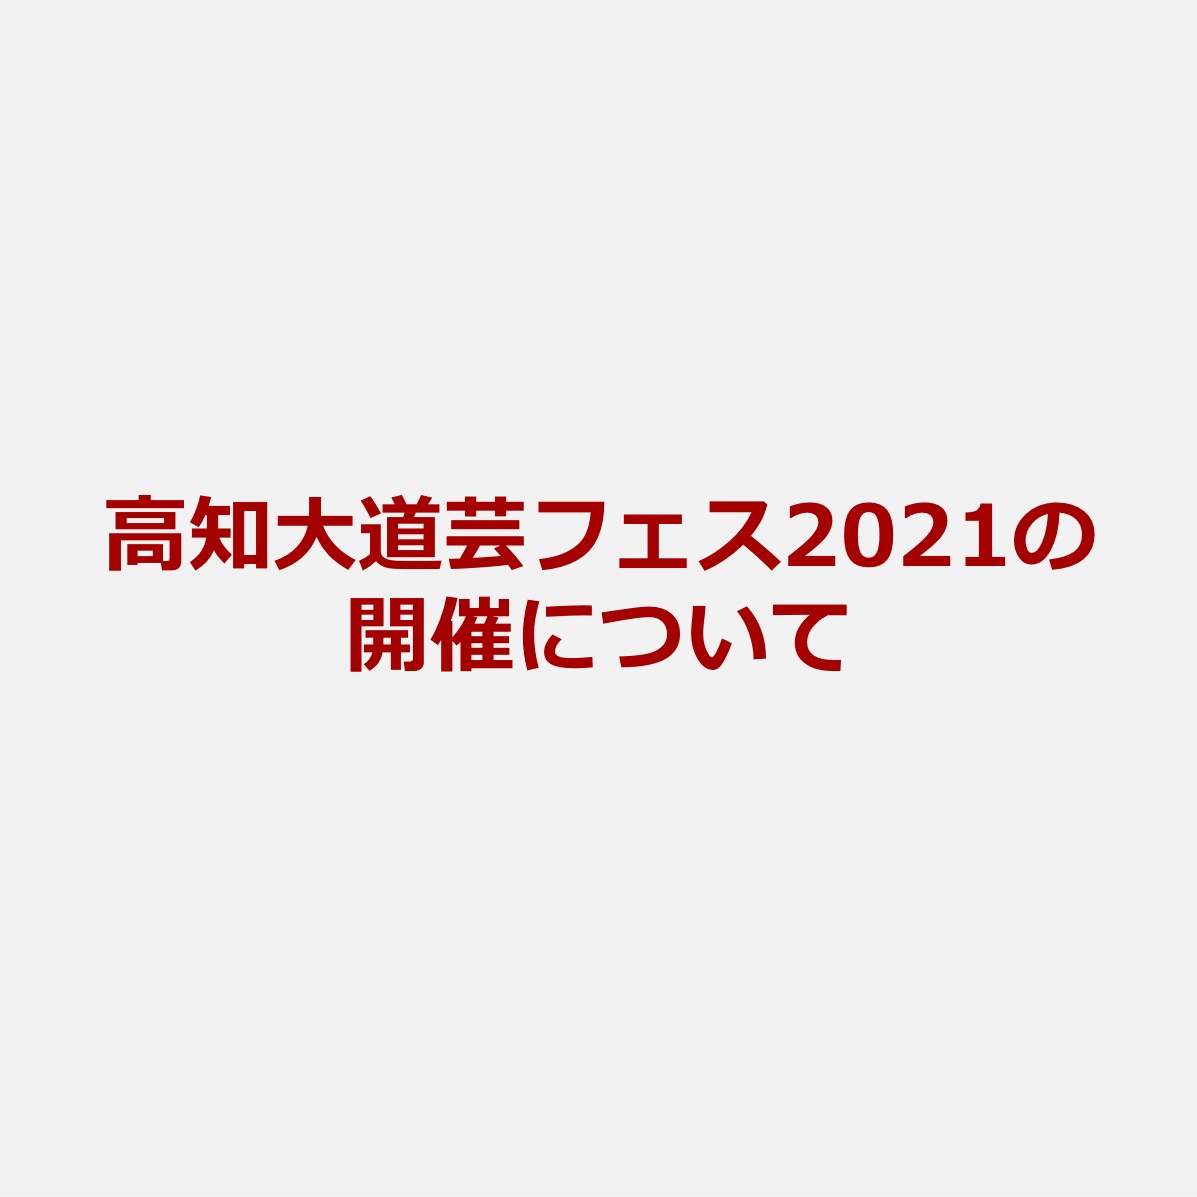 高知大道芸フェス2021【開催中止】のお知らせ